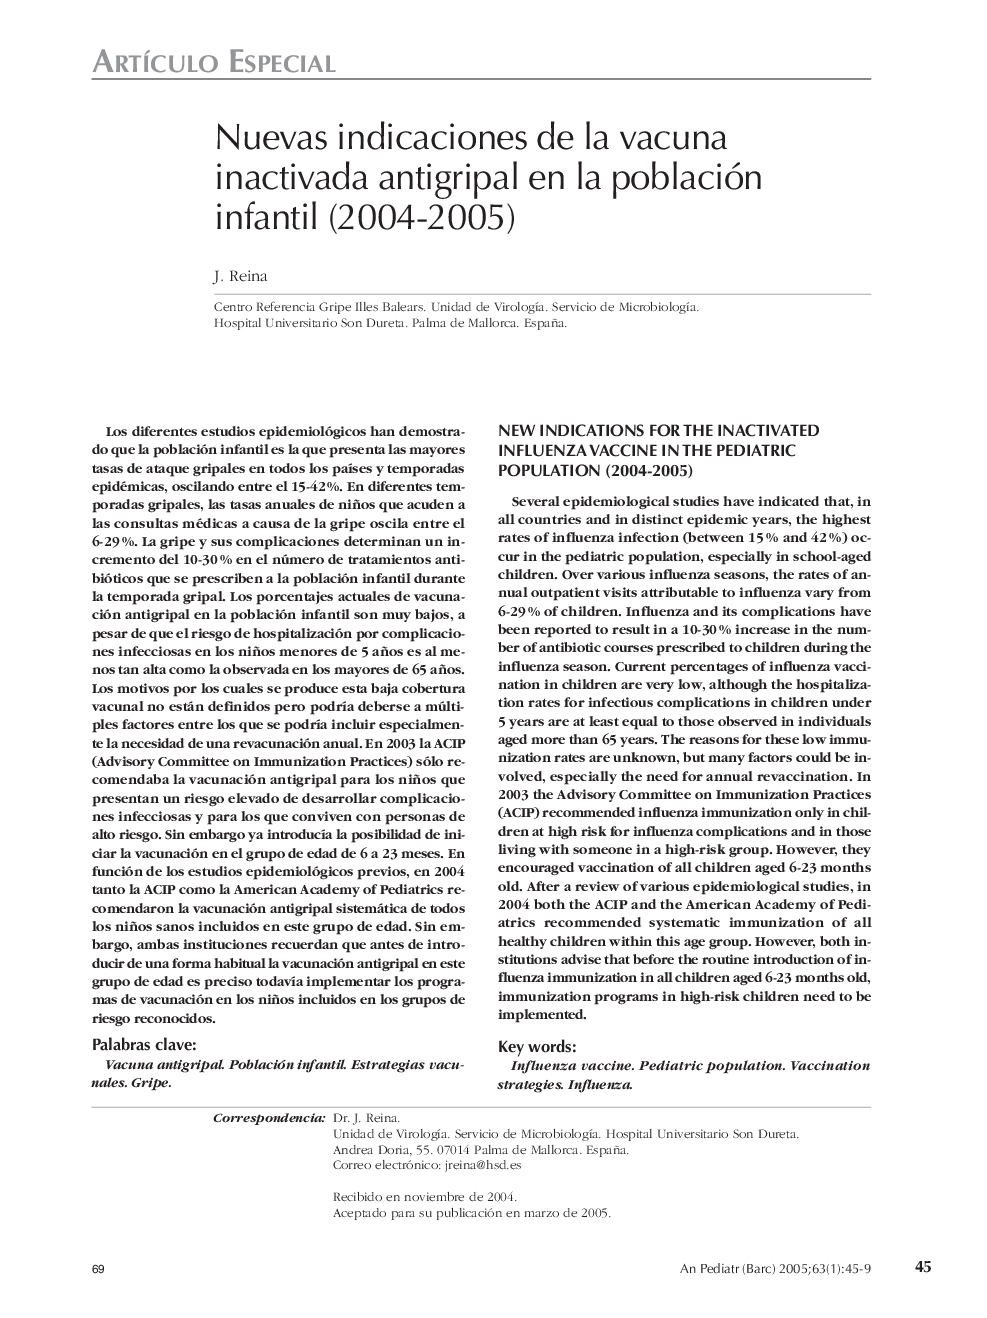 Nuevas indicaciones de la vacuna inactivada antigripal en la población infantil (2004-2005)